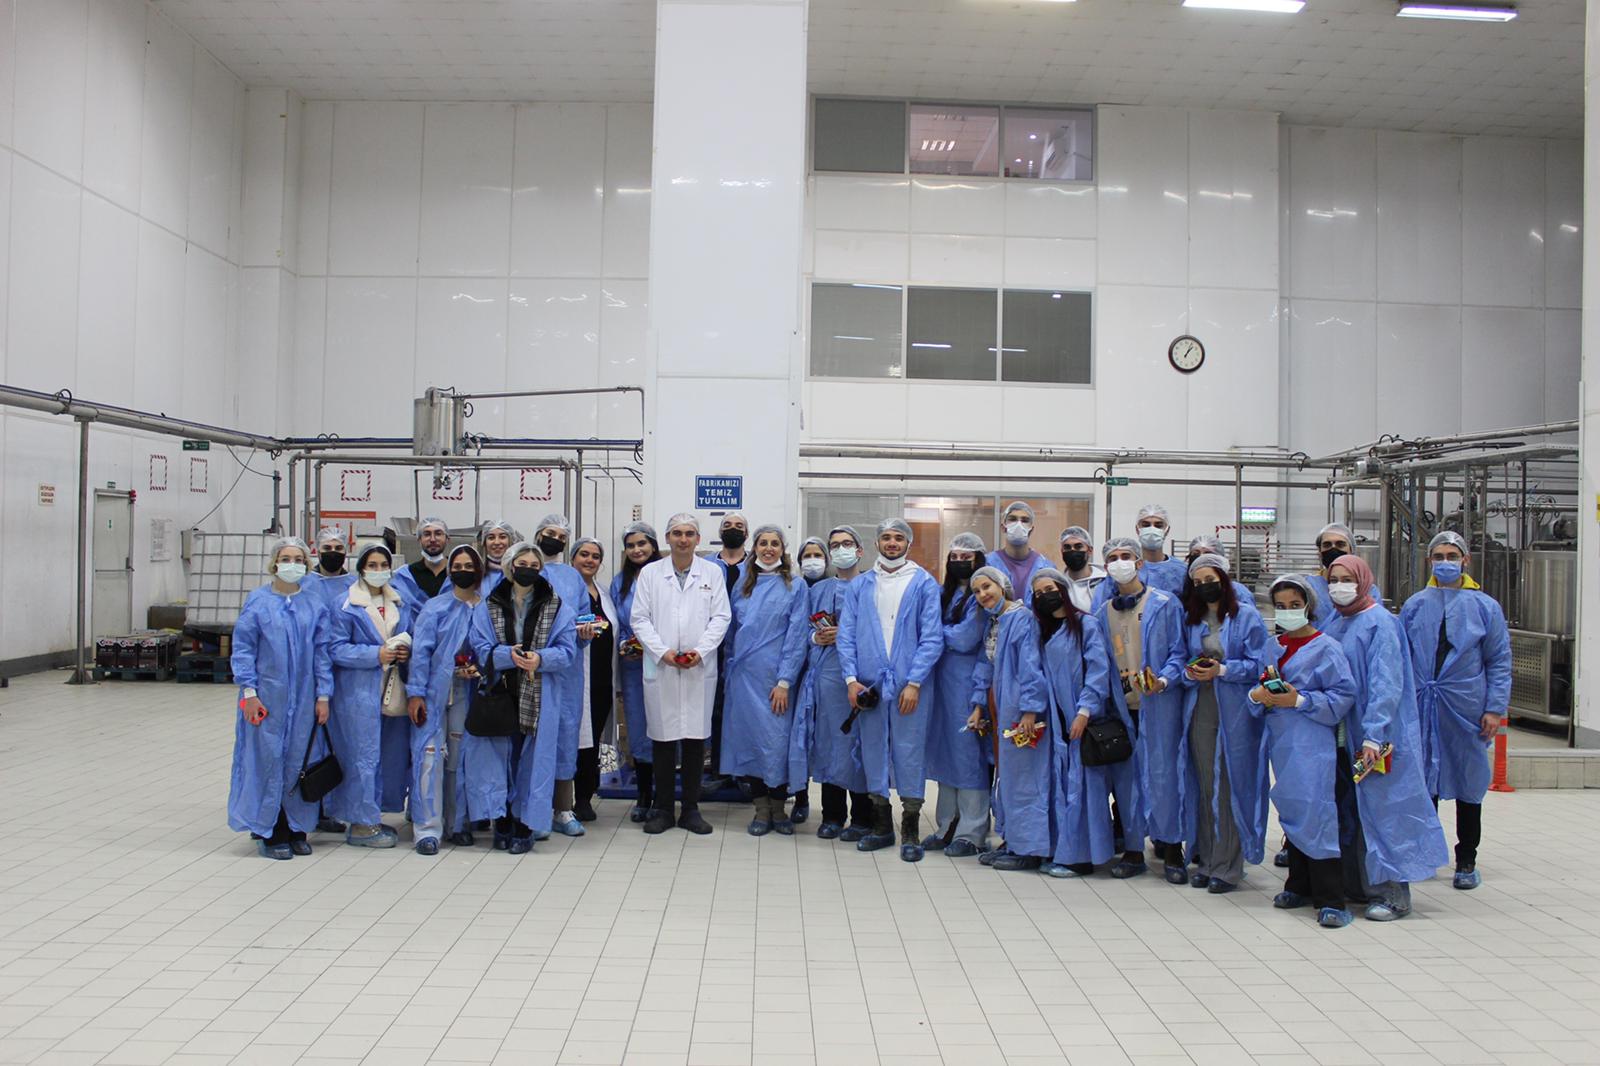 Çankaya Üniversitesi İşletme Bölümü öğrencileri ile gerçekleştirilen Beyoğlu Çikolata Fabrikası Gezisinden Kareler…(Doç. Dr. İrge ŞENER, 29 Aralık 2021)